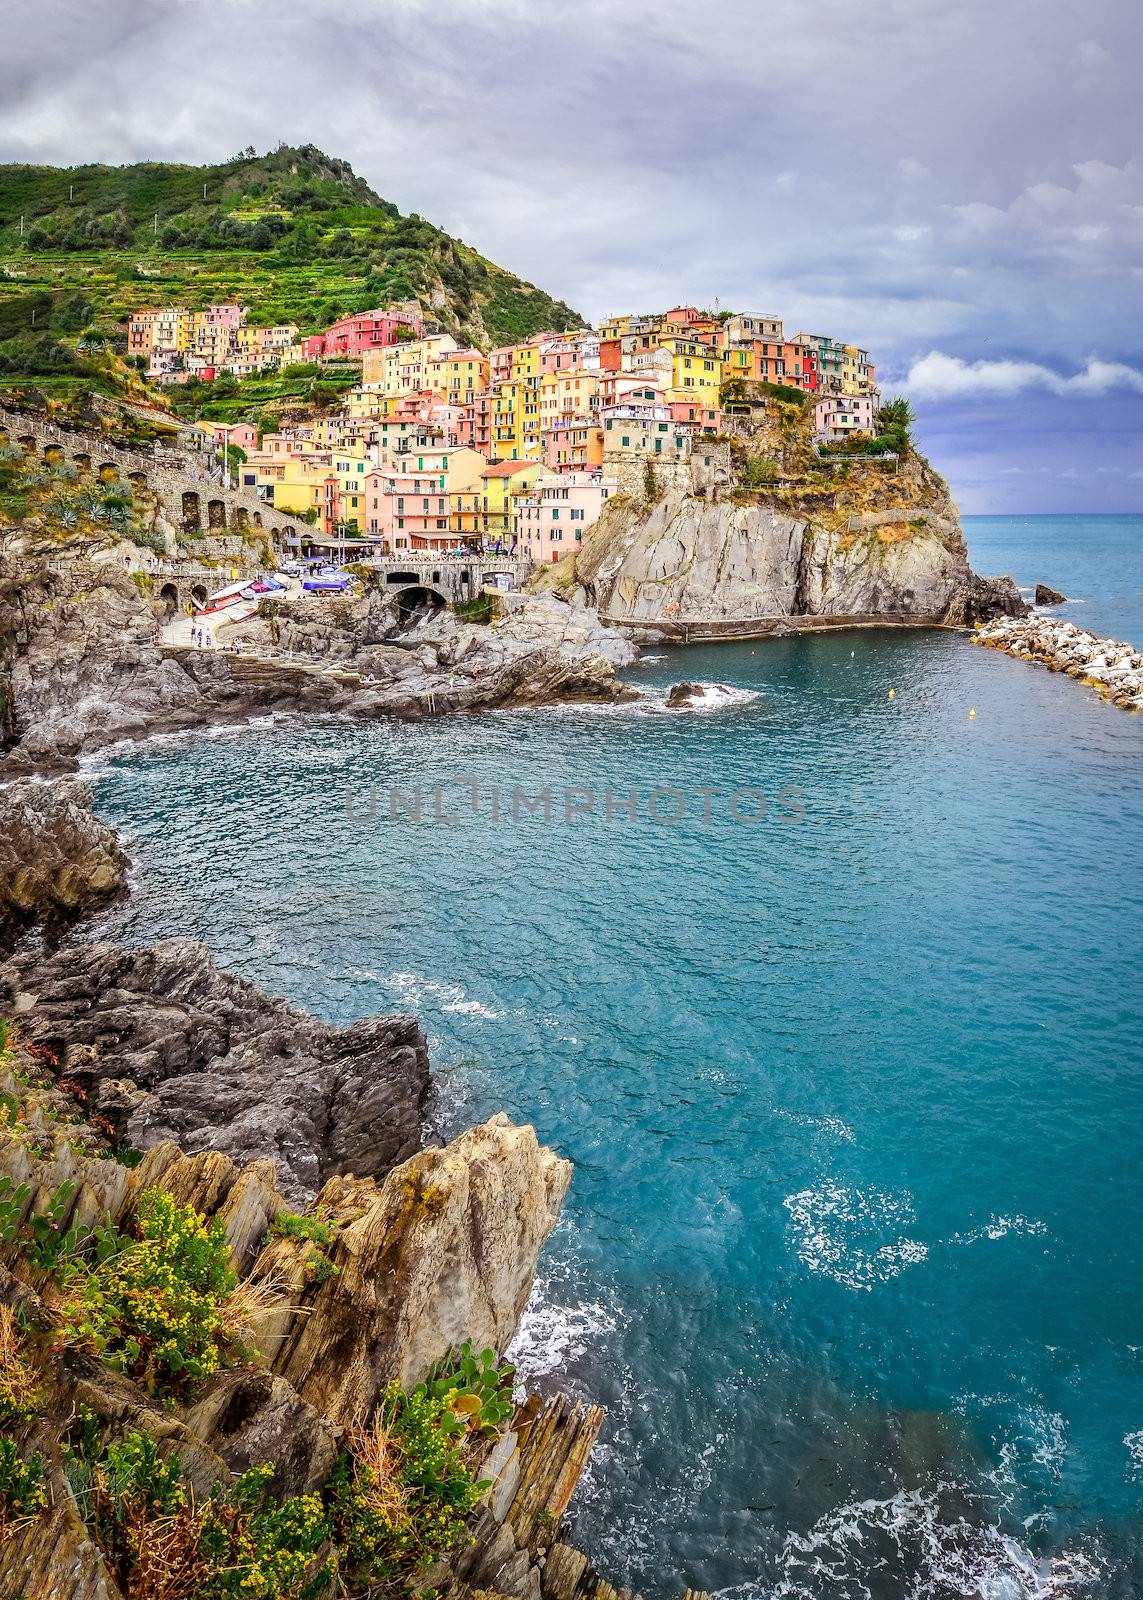 Scenic view of colorful village Manarola and ocean coast in Cinque Terre, Italy